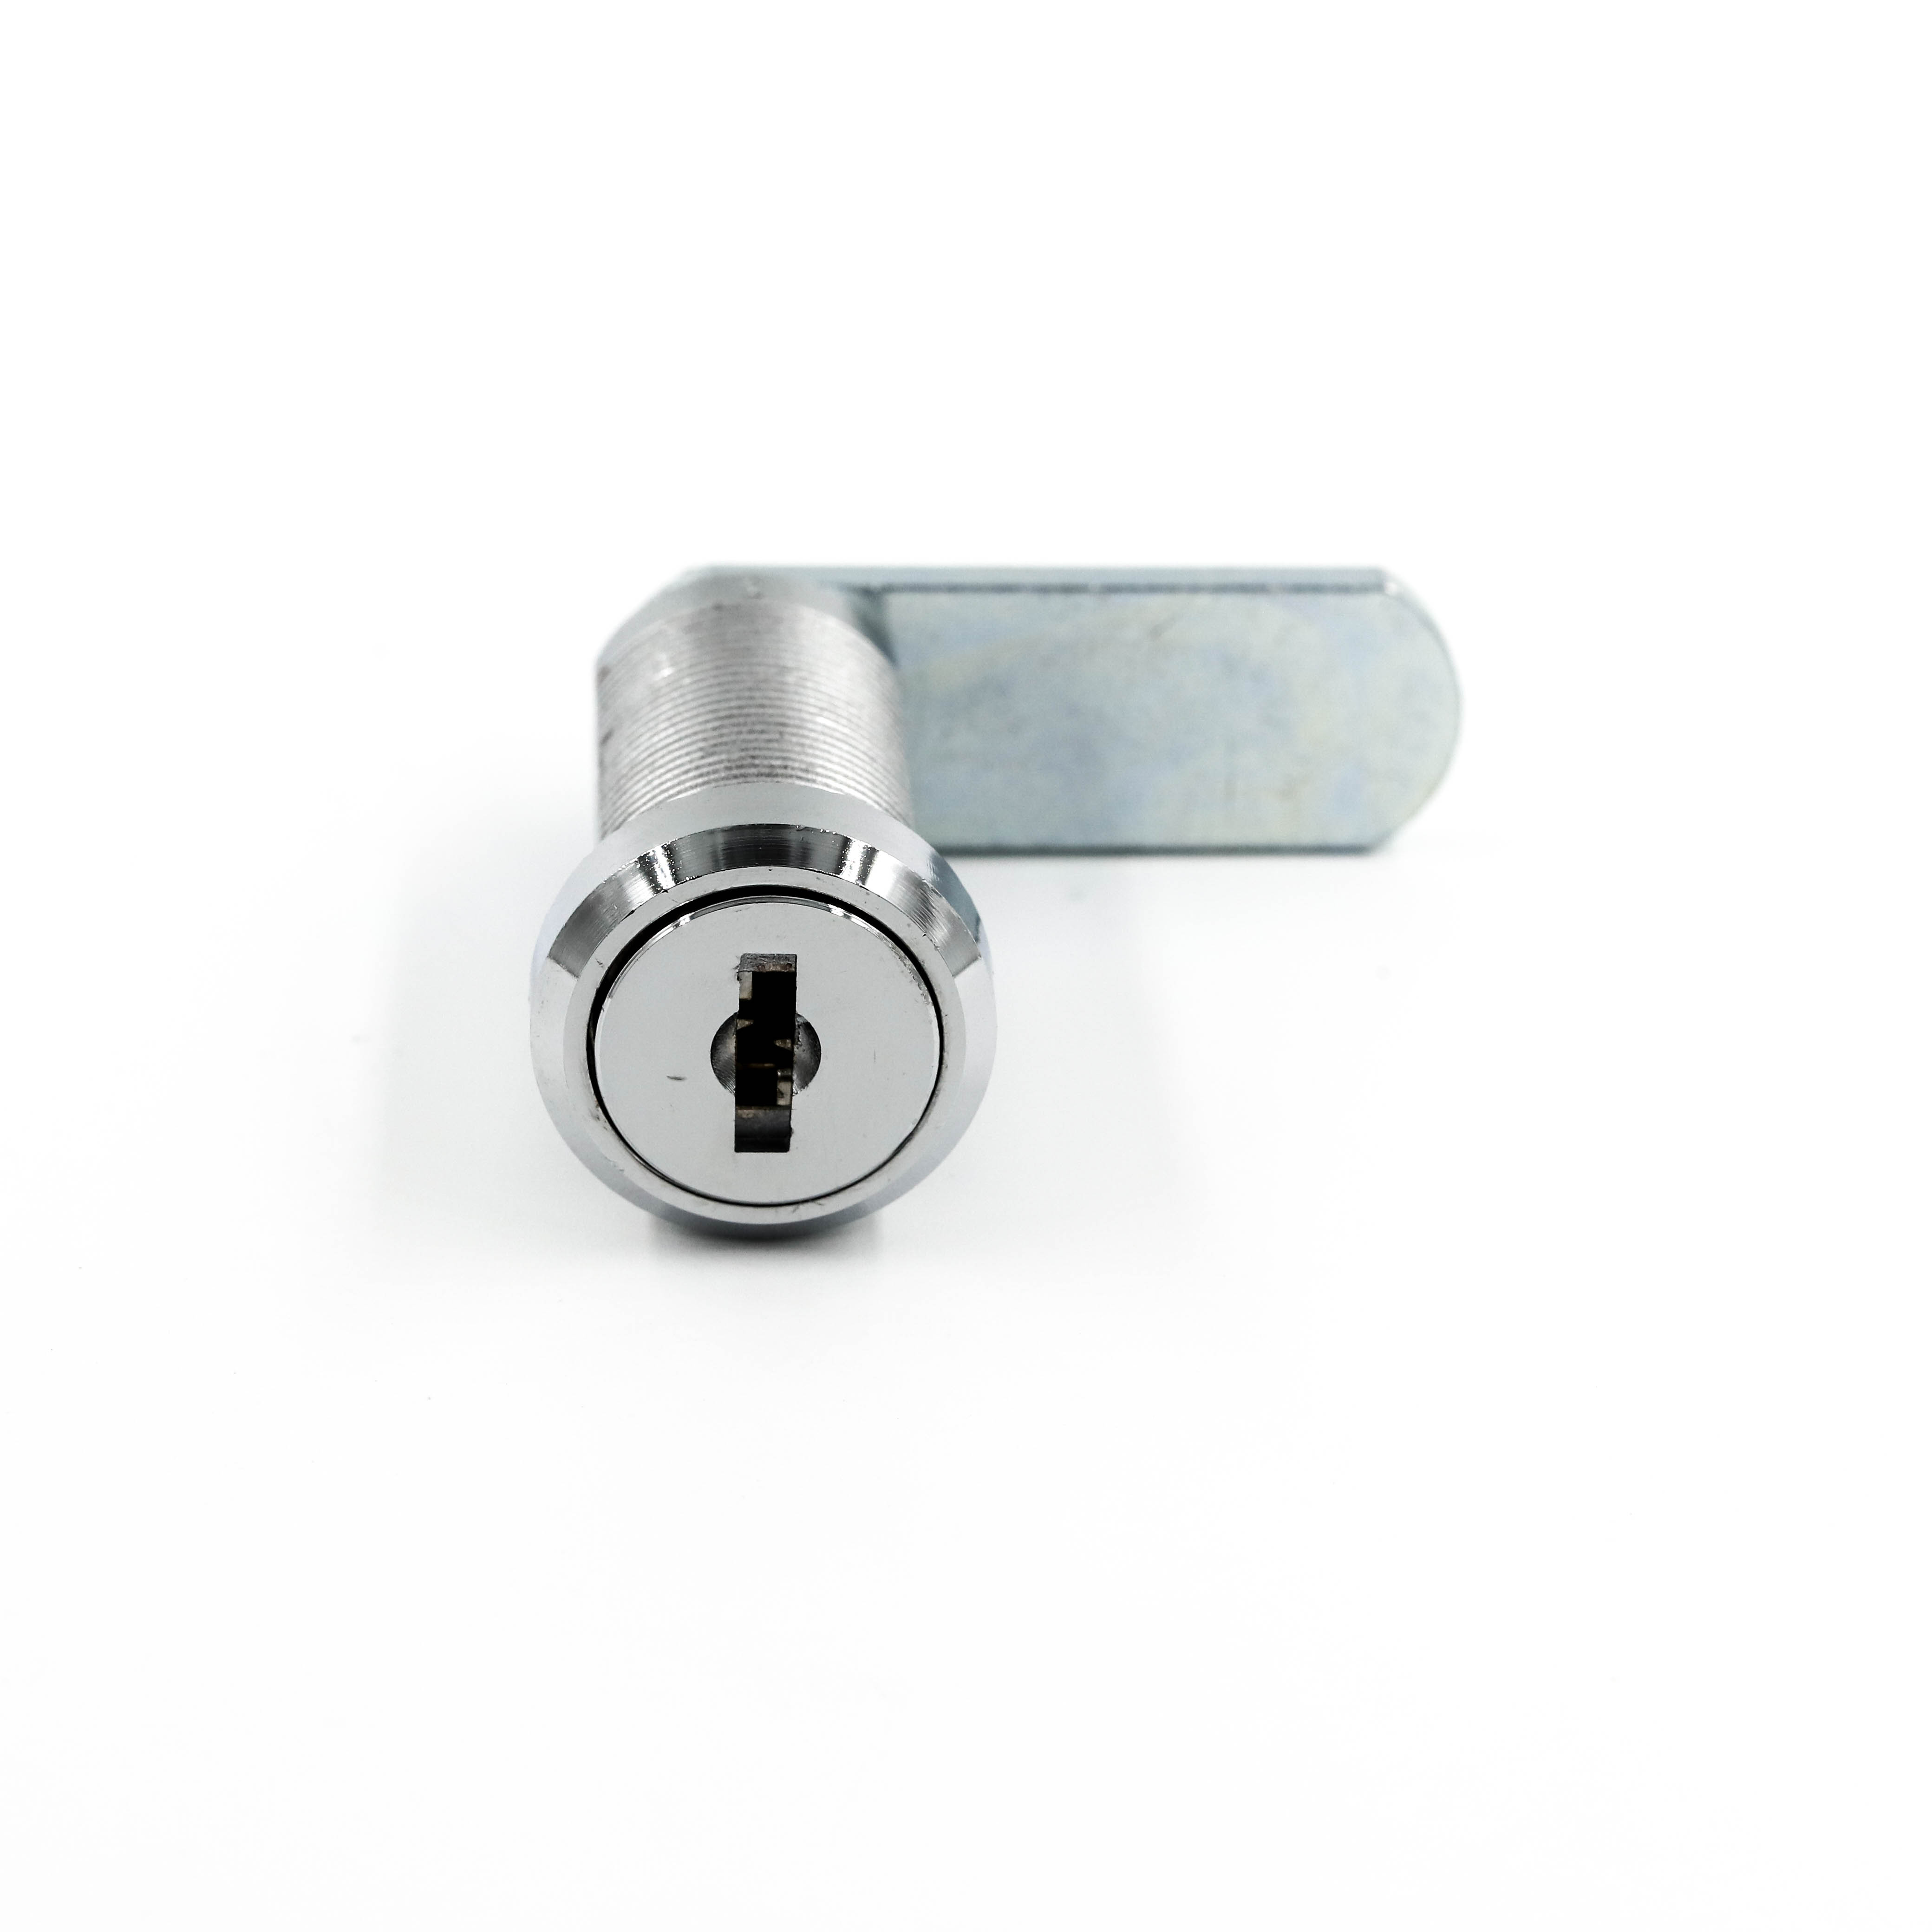 Cam lock set 32mm keyed alike